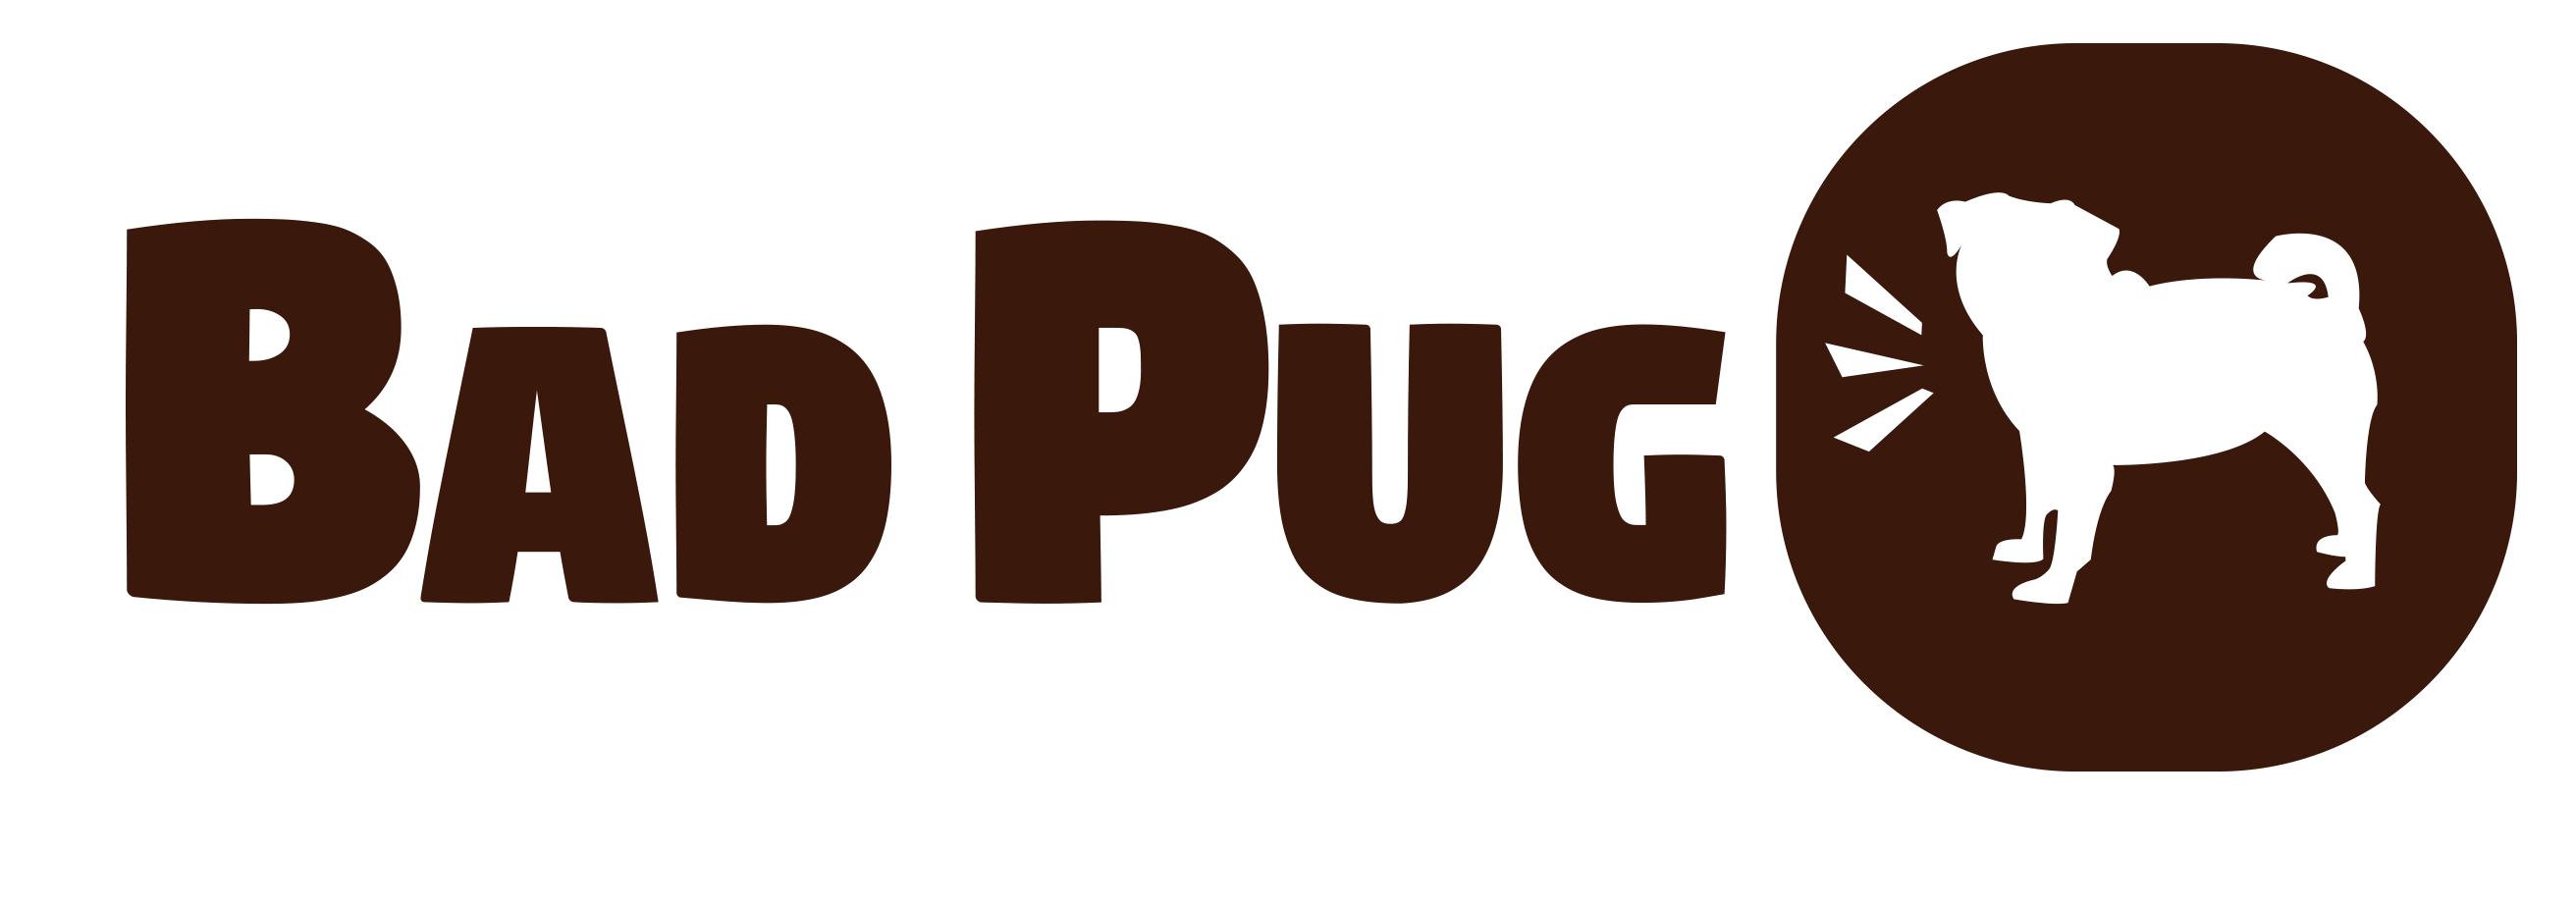 Bad Pug